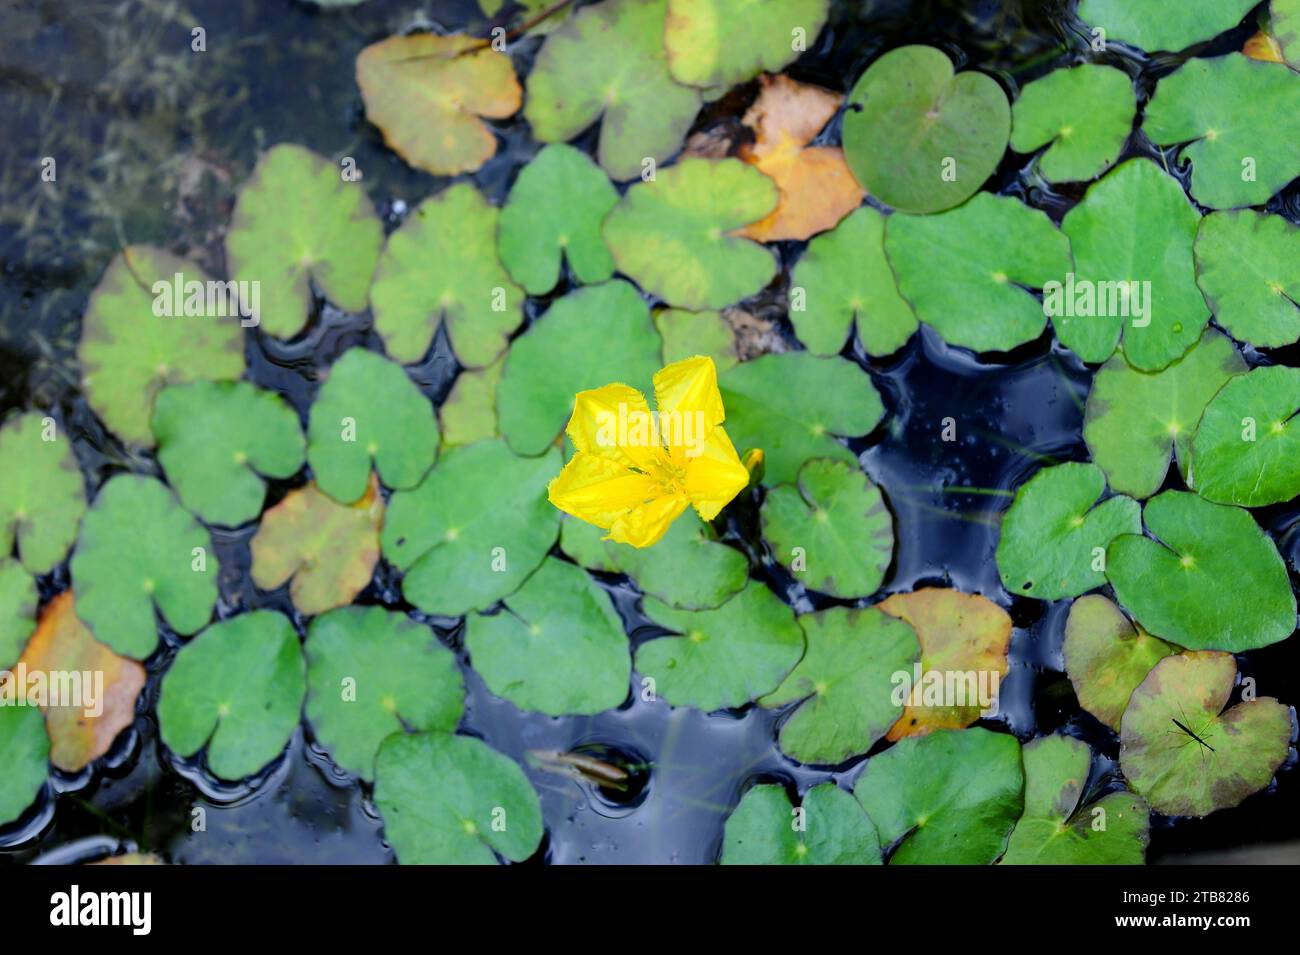 El lirio o corazón flotante (Nymphoides peltata) es una hierba acuática perenne nativa de Asia y la región mediterránea. Foto de stock